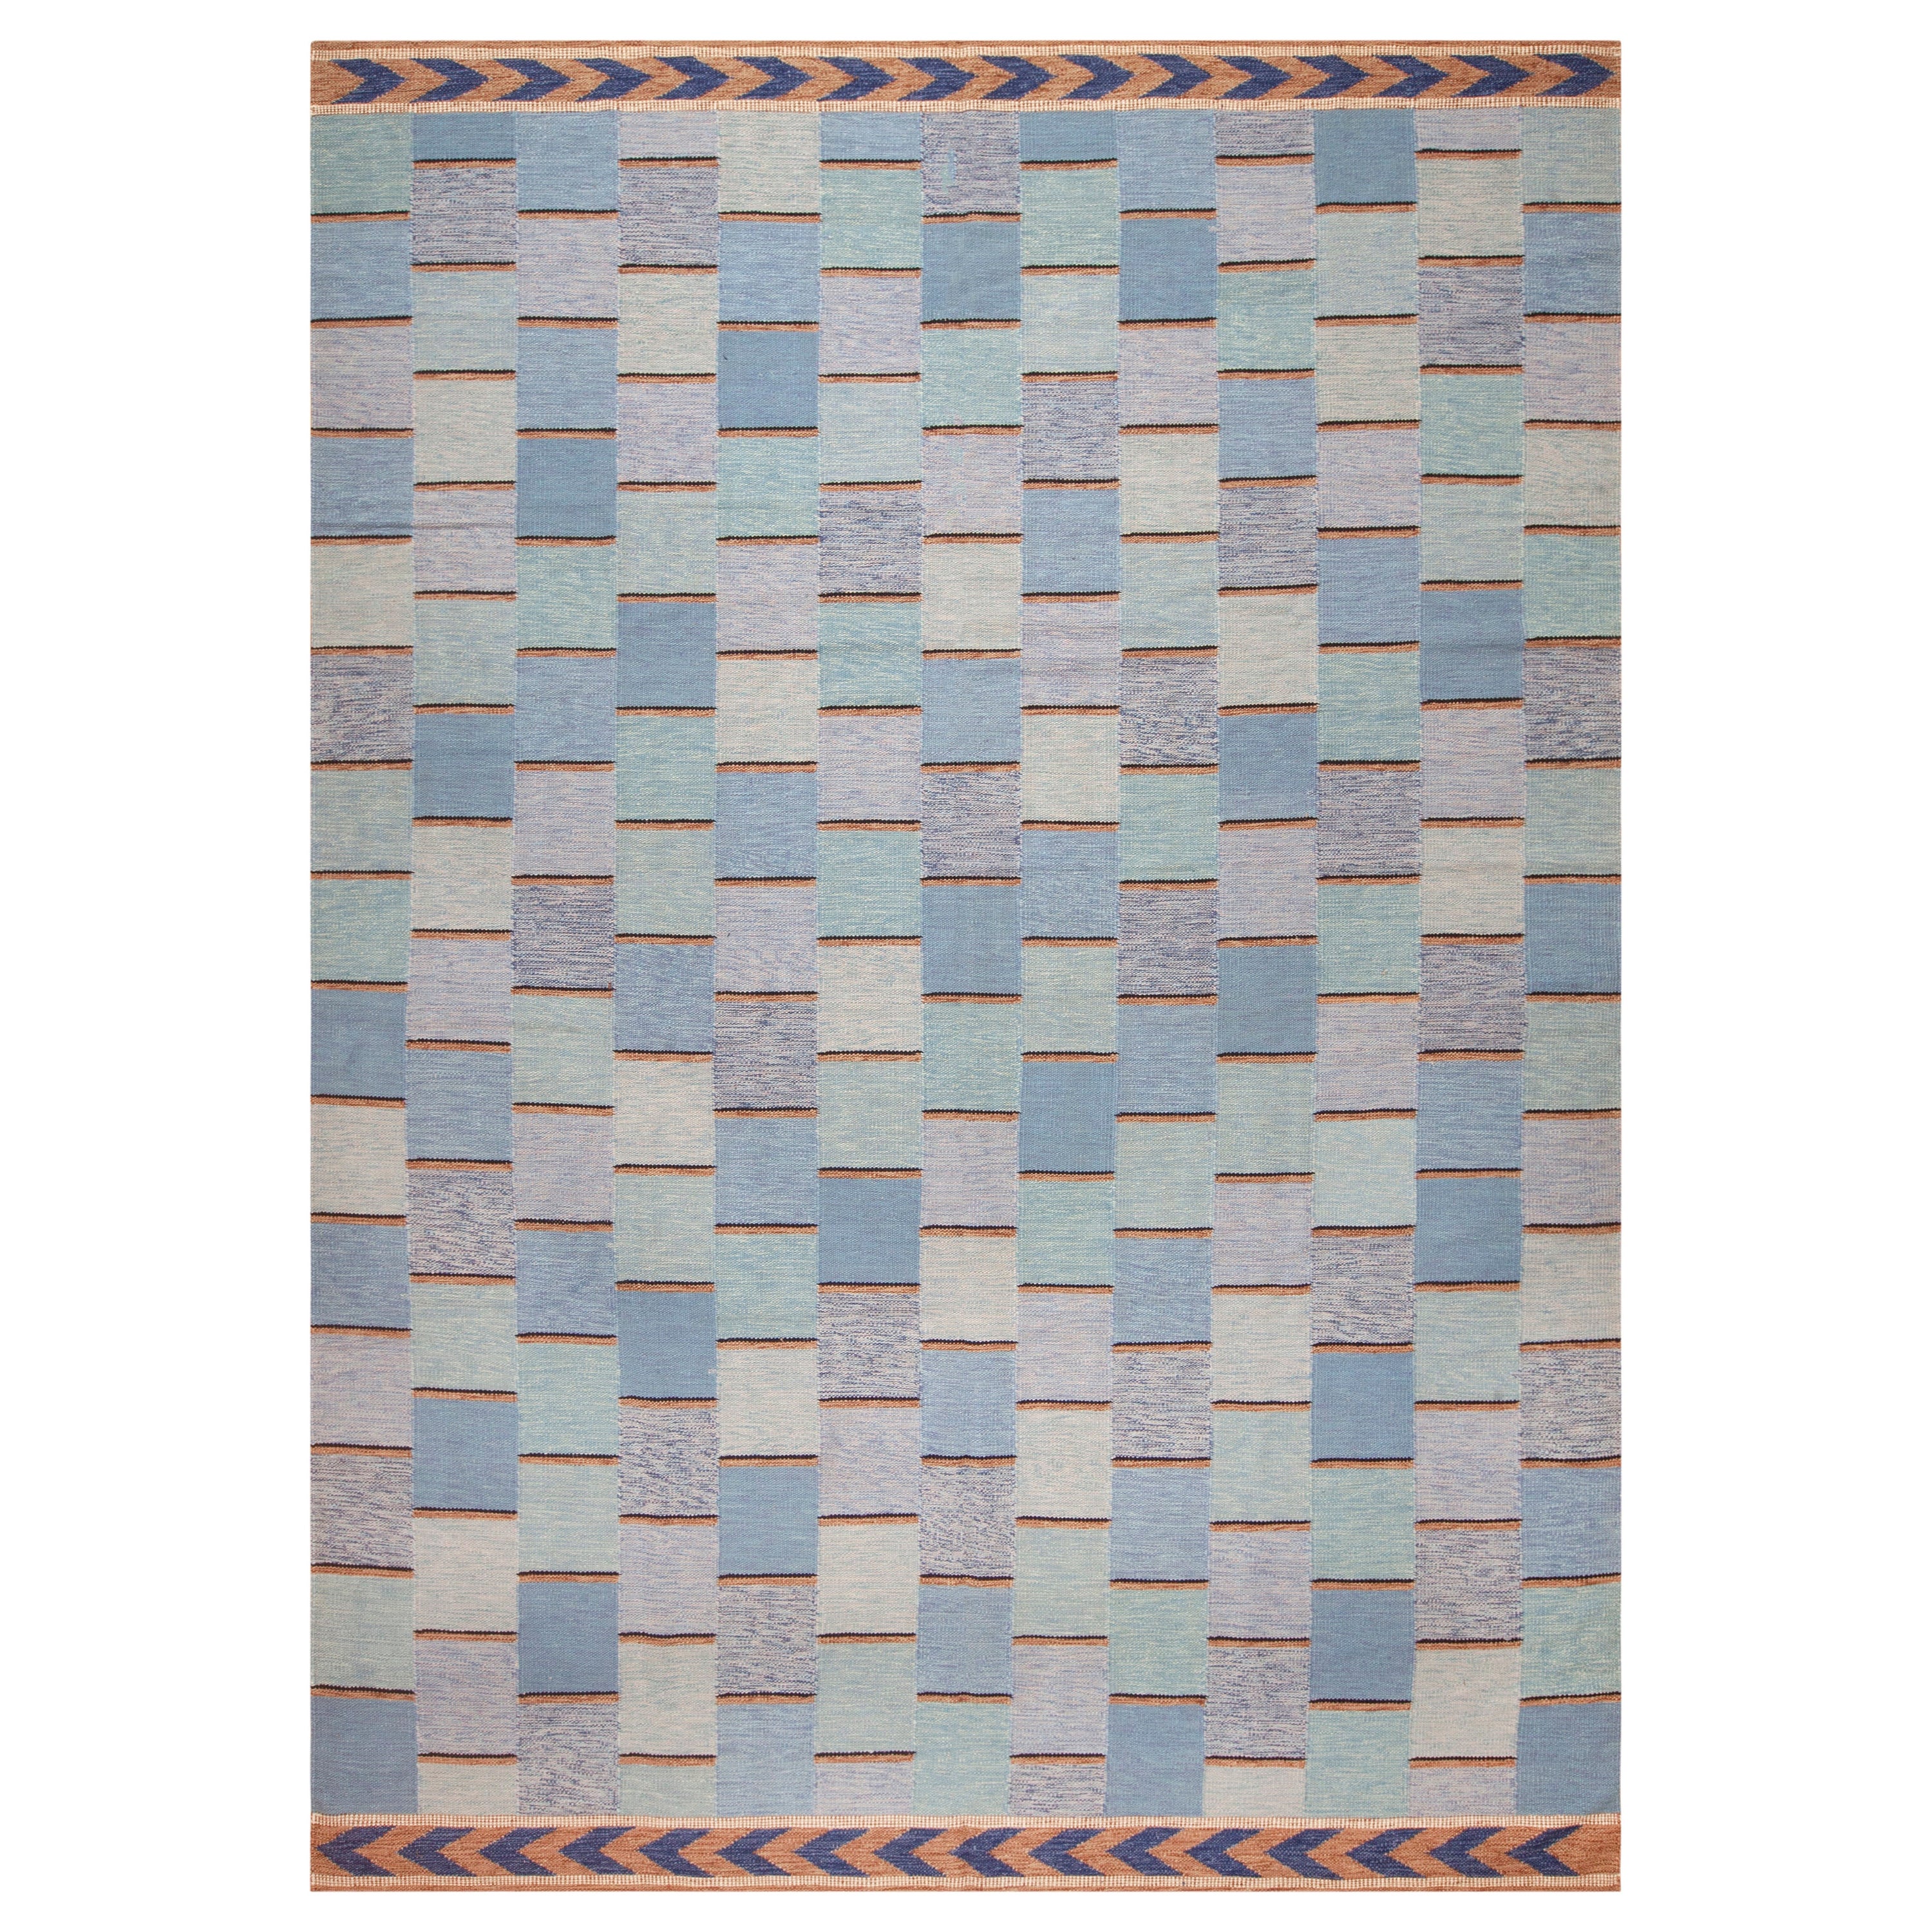 Nazmiyal Kollektion Geometrischer moderner schwedischer flachgewebter Teppich in schwedischem Design 10' x 14'2"